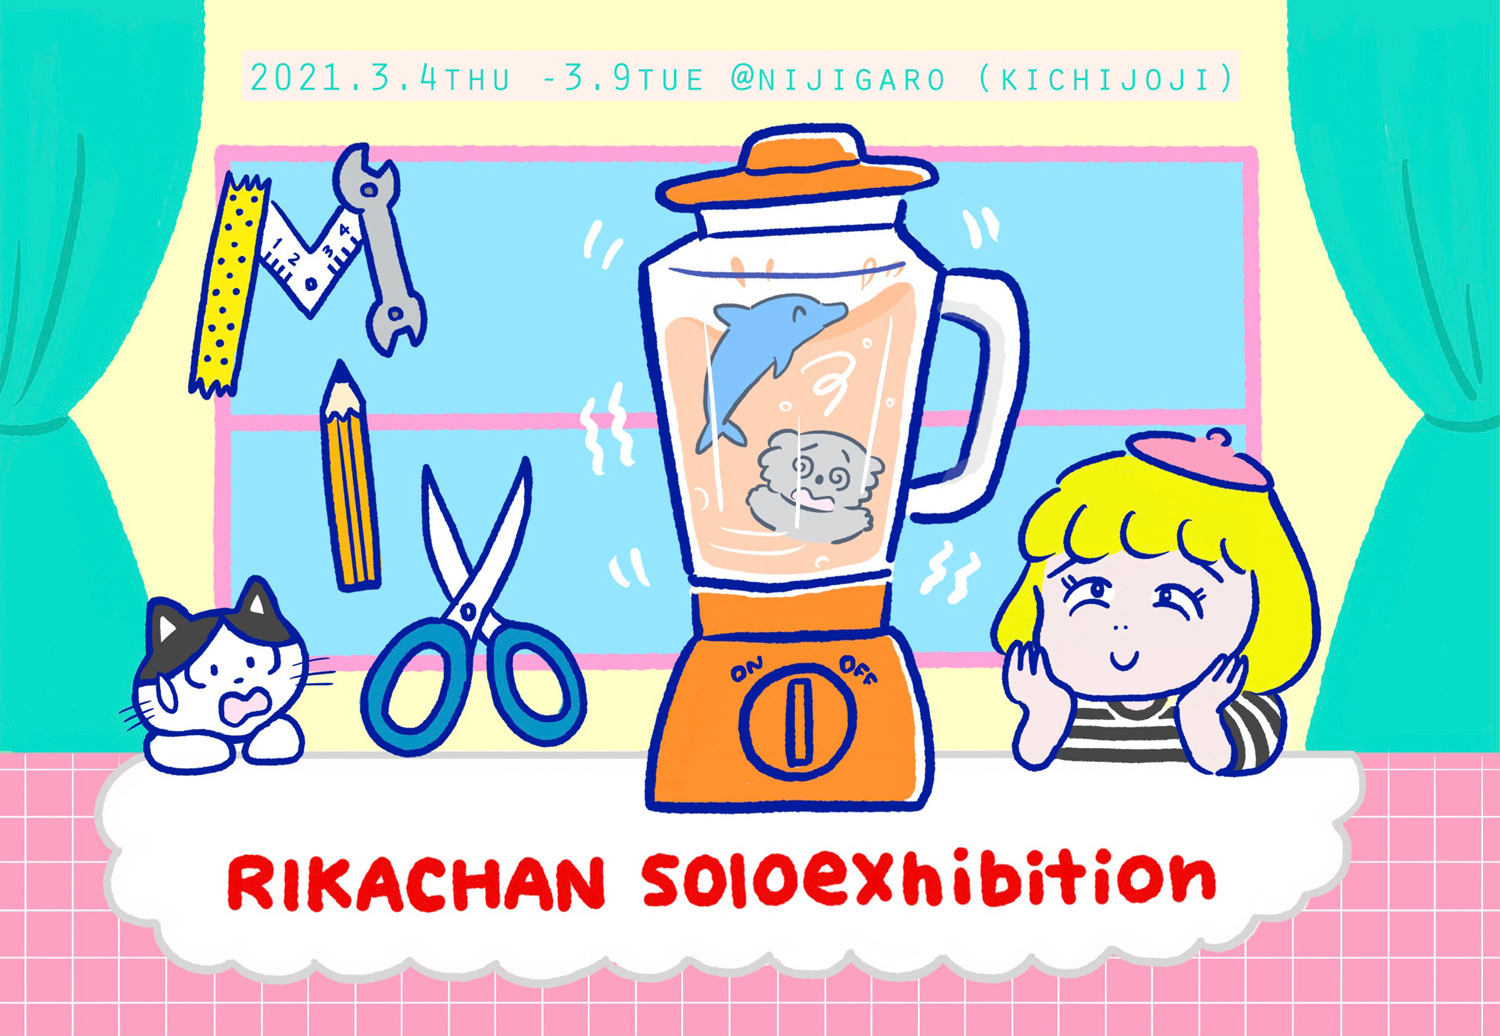 RIKACHAN solo exhibition「MIX」